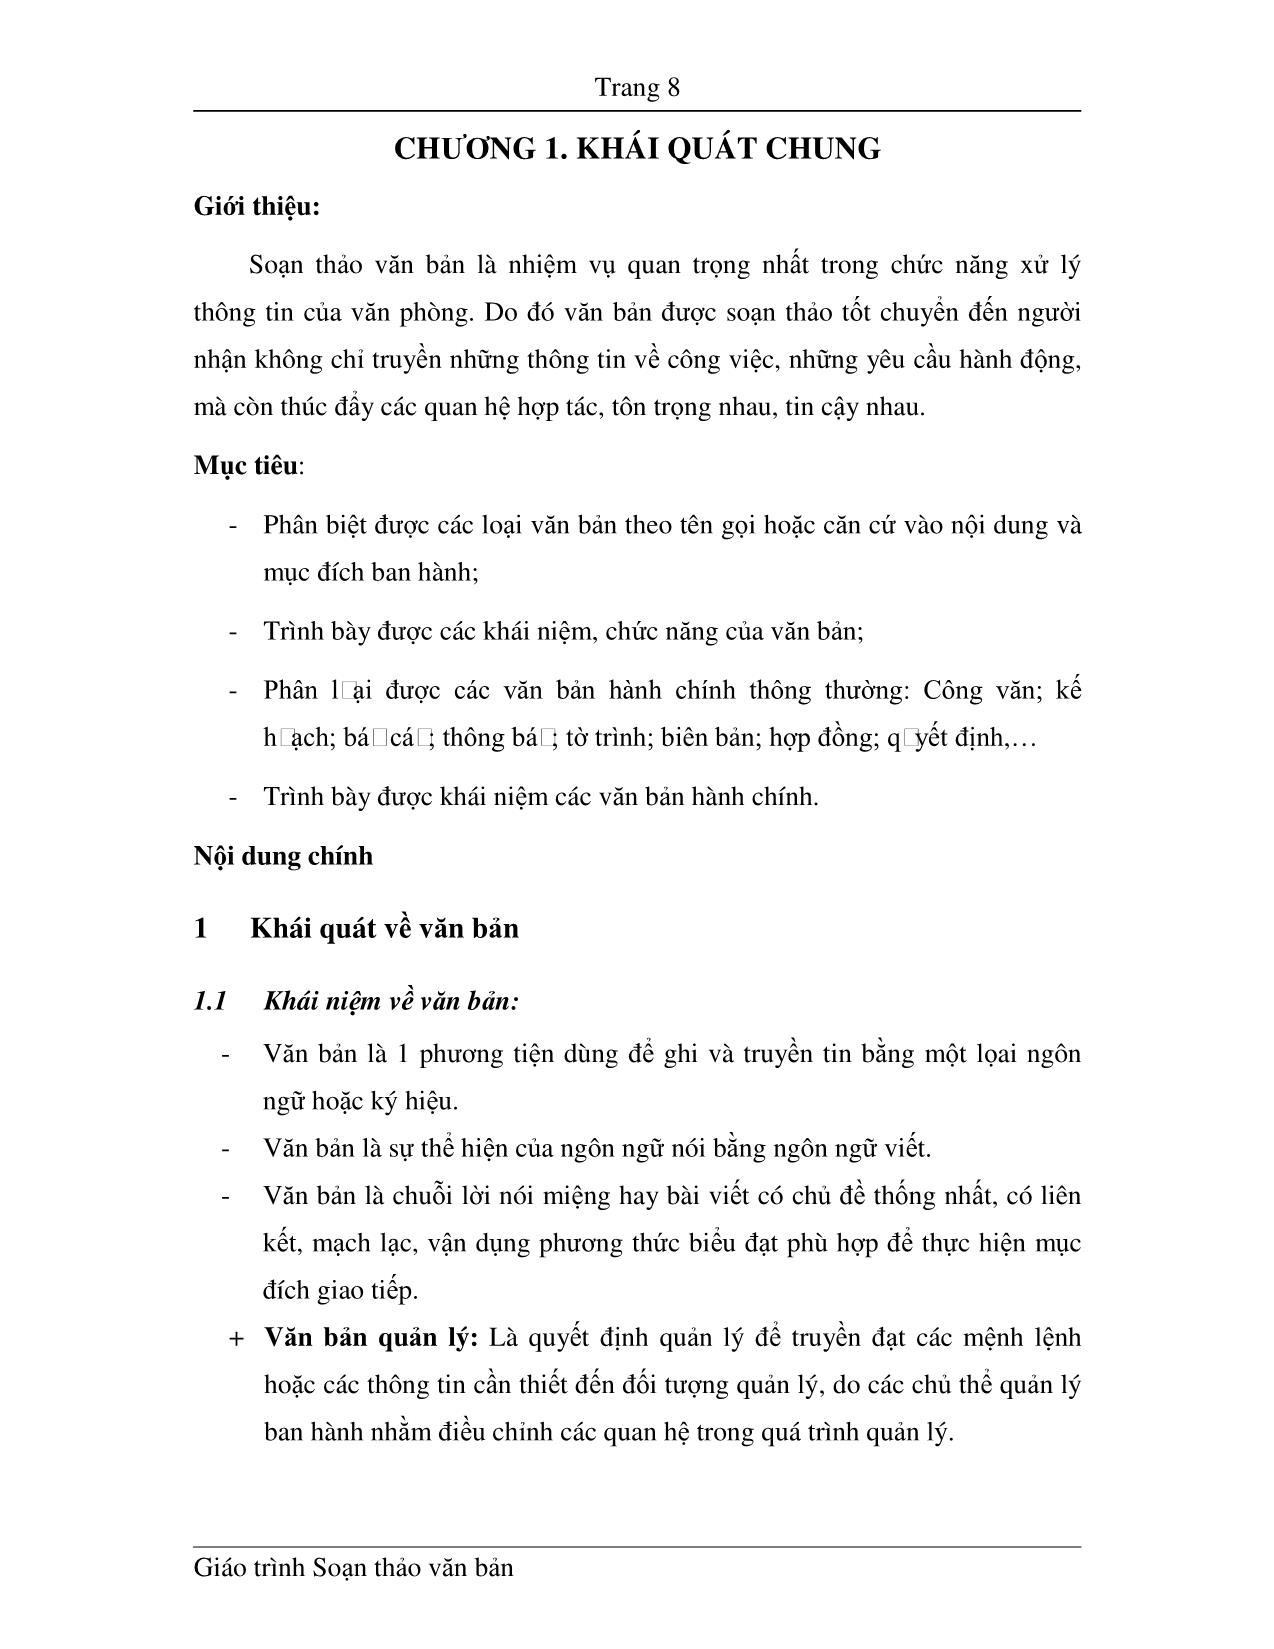 Giáo trình Soạn thảo văn bản (Phần 1) trang 8